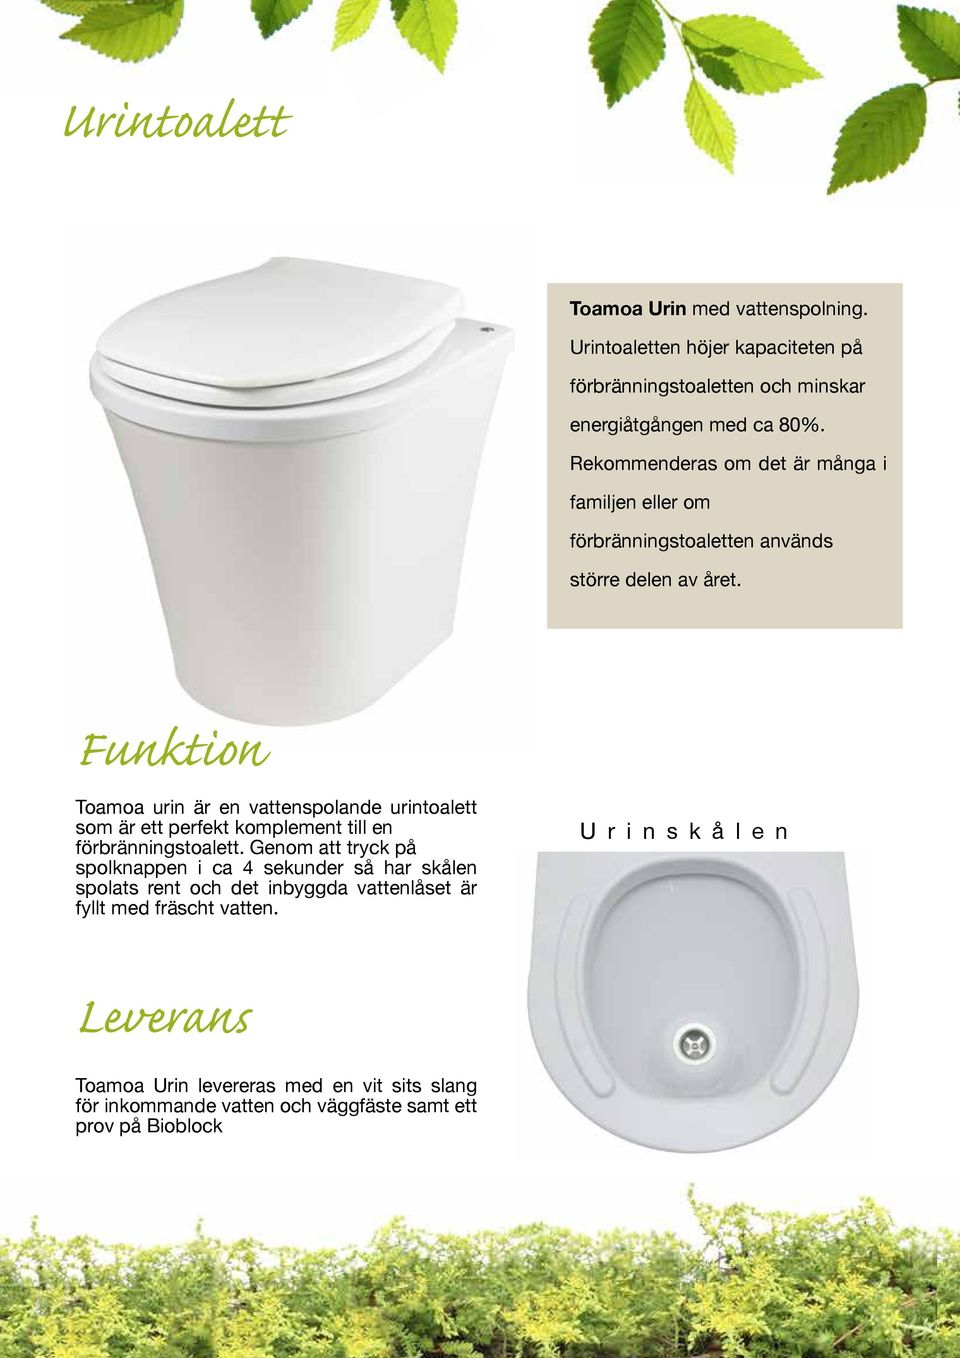 Funktion Toamoa urin är en vattenspolande urintoalett som är ett perfekt komplement till en förbränningstoalett.